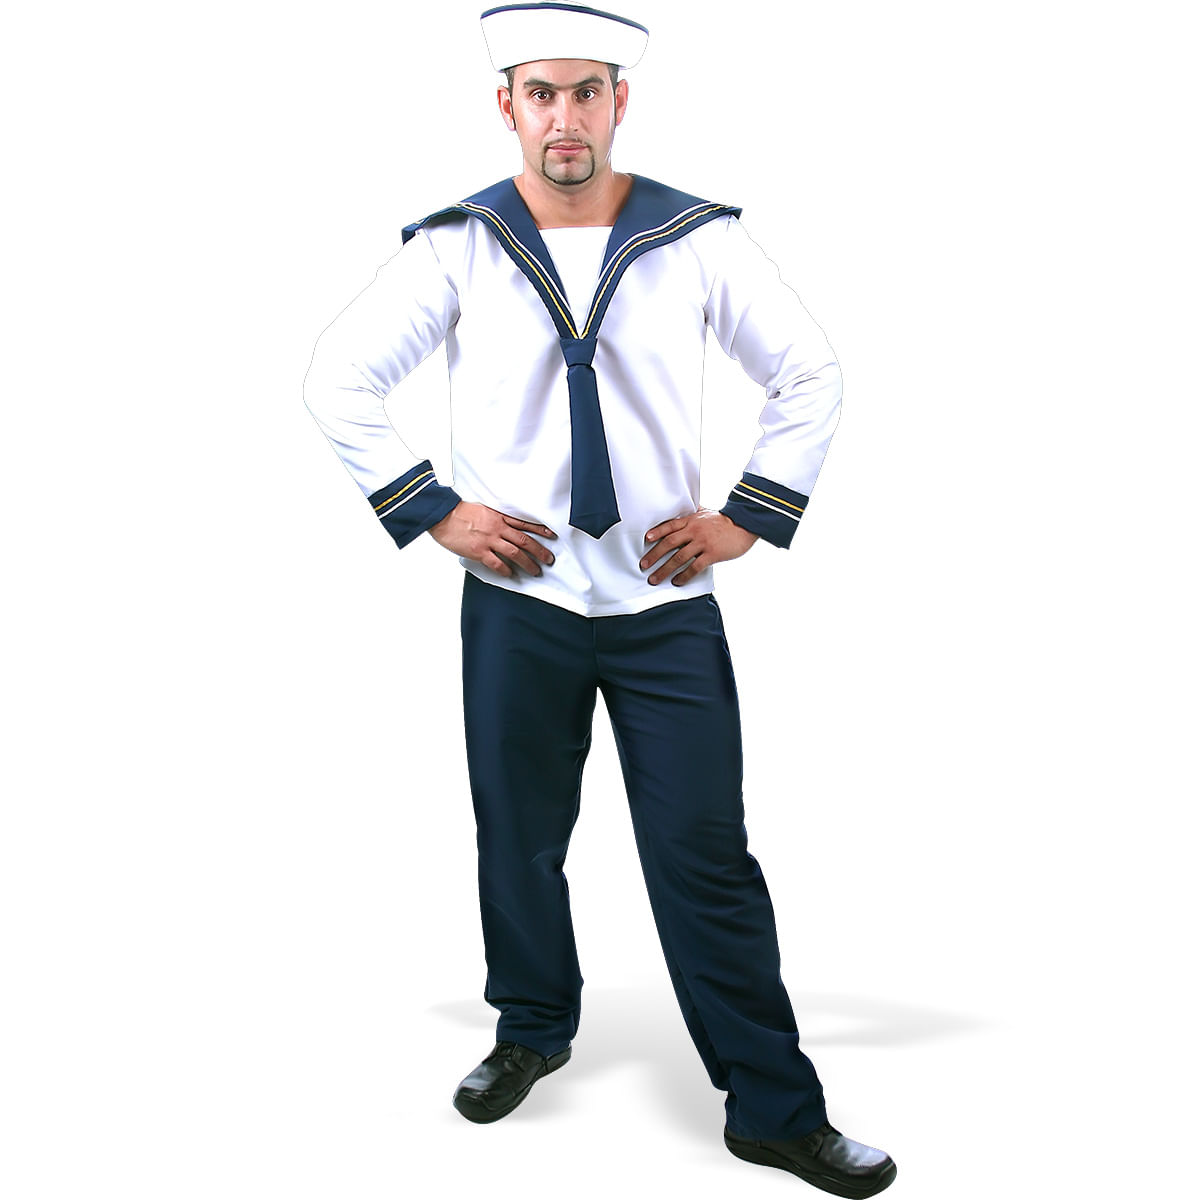 roupa de marinheiro bebe